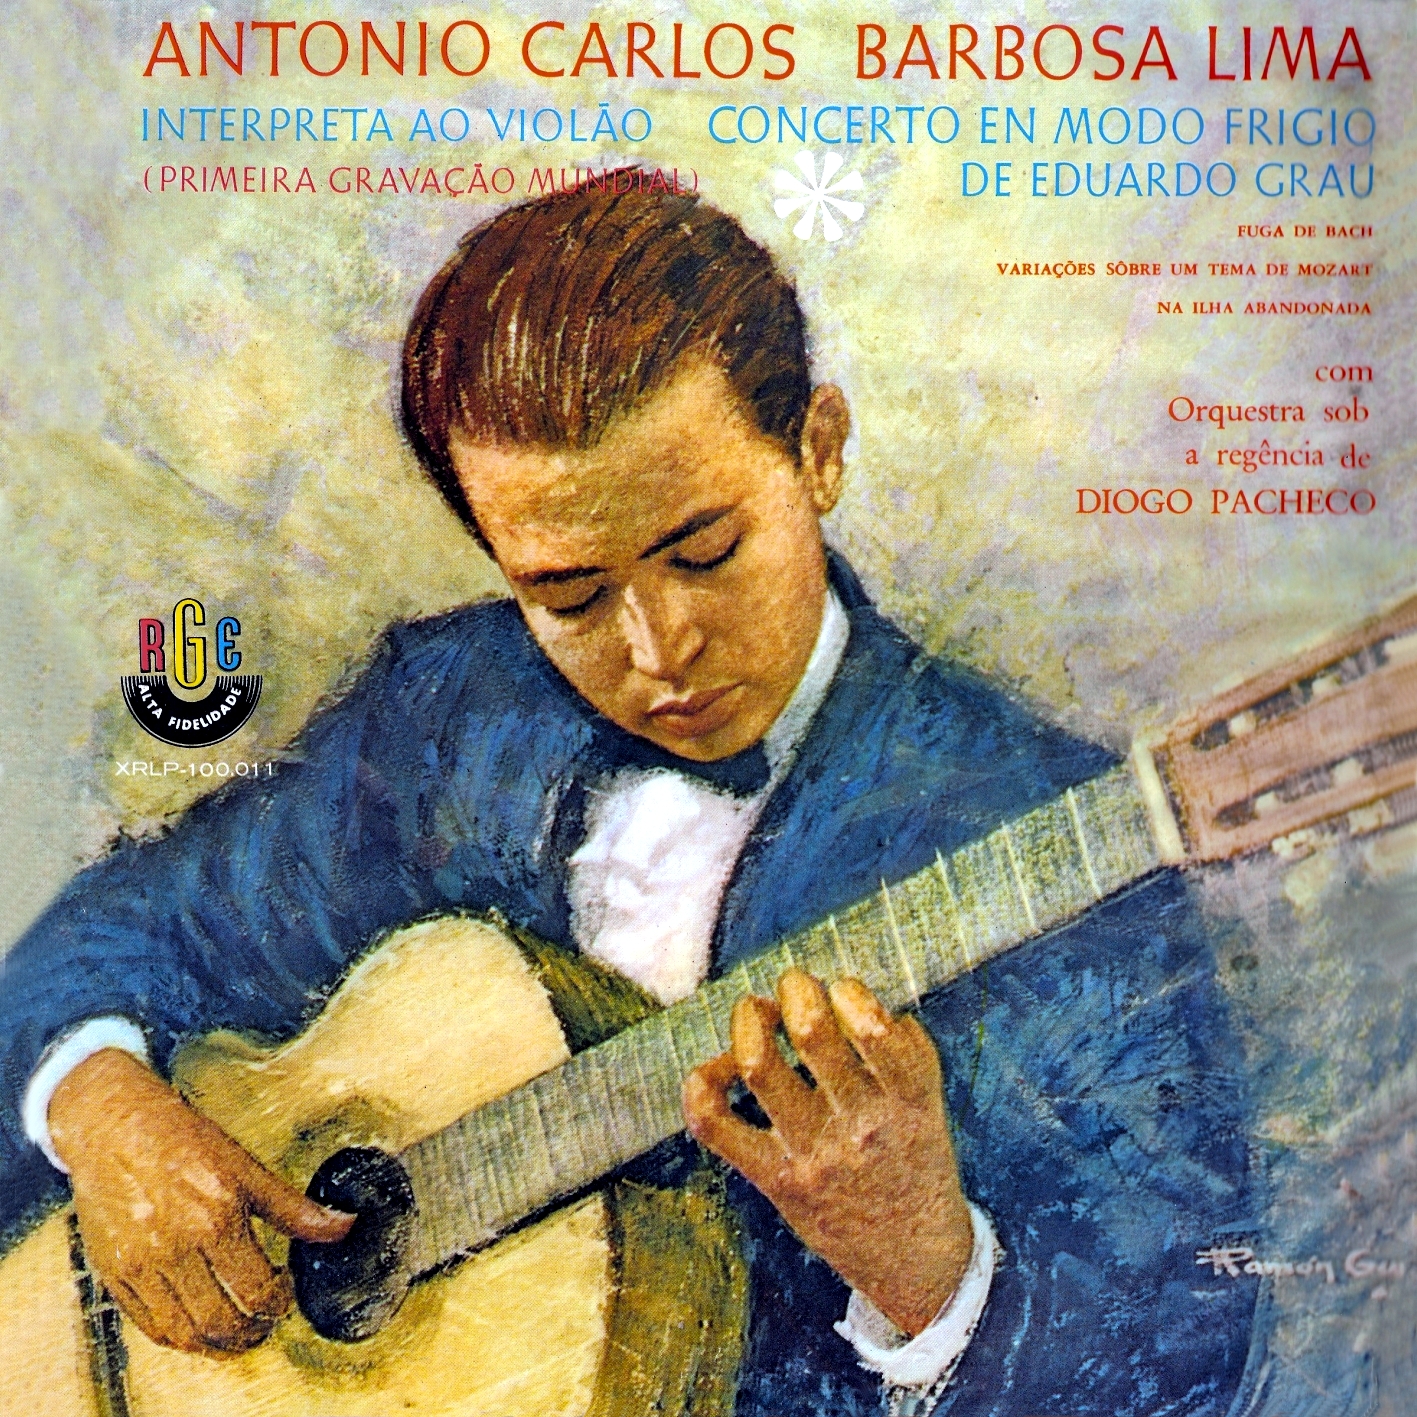 Carlos Barbosa Lima Interpreta ao Violão Concerto em Modo Frígio de Eduardo Grau